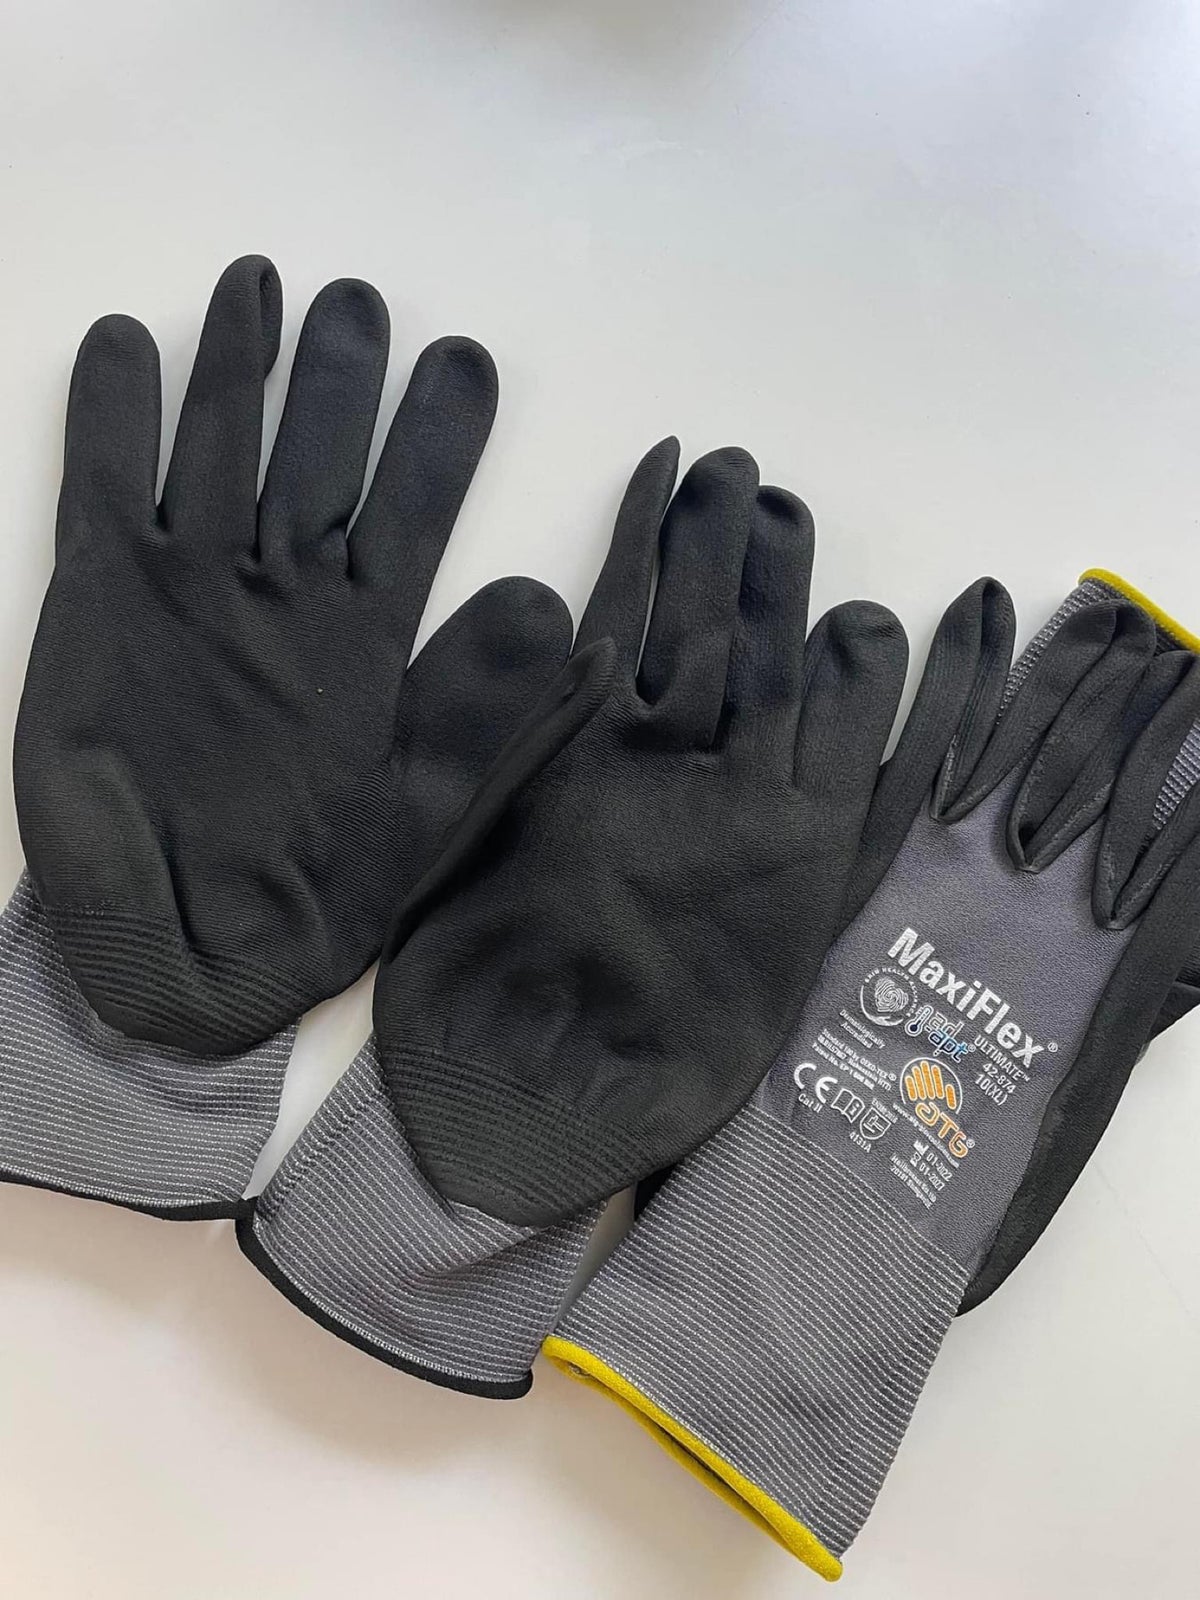 Handsker , Maxi flex handsker – dba.dk – Køb og Salg af Nyt Brugt